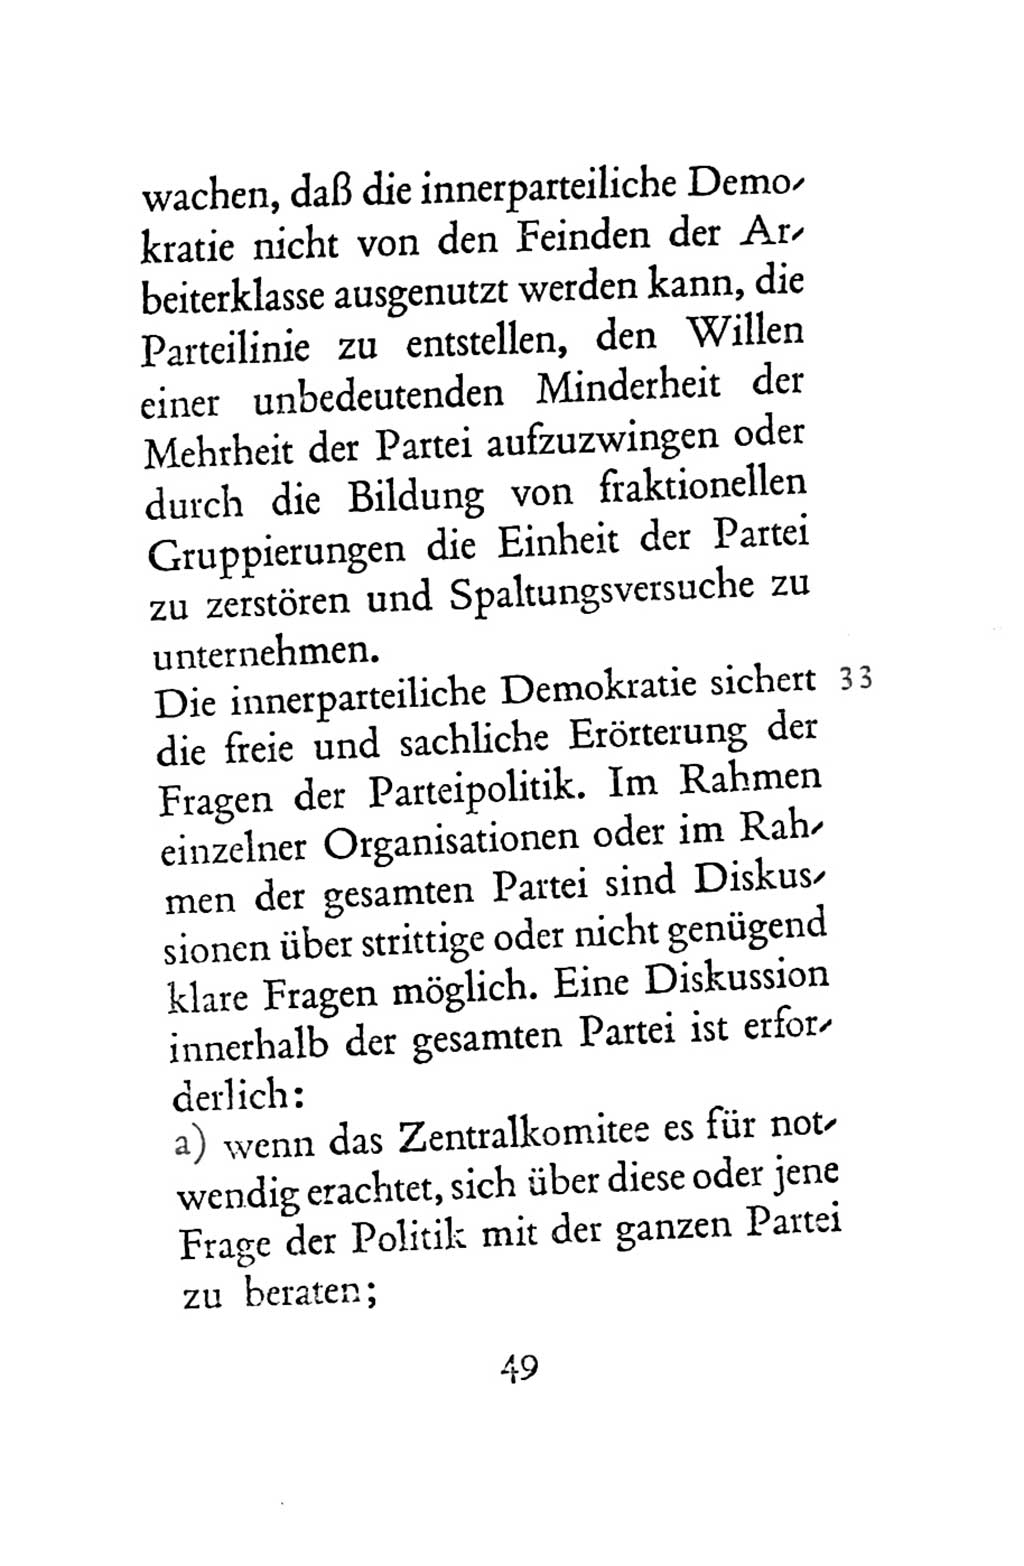 Statut der Sozialistischen Einheitspartei Deutschlands (SED) 1963, Seite 49 (St. SED DDR 1963, S. 49)